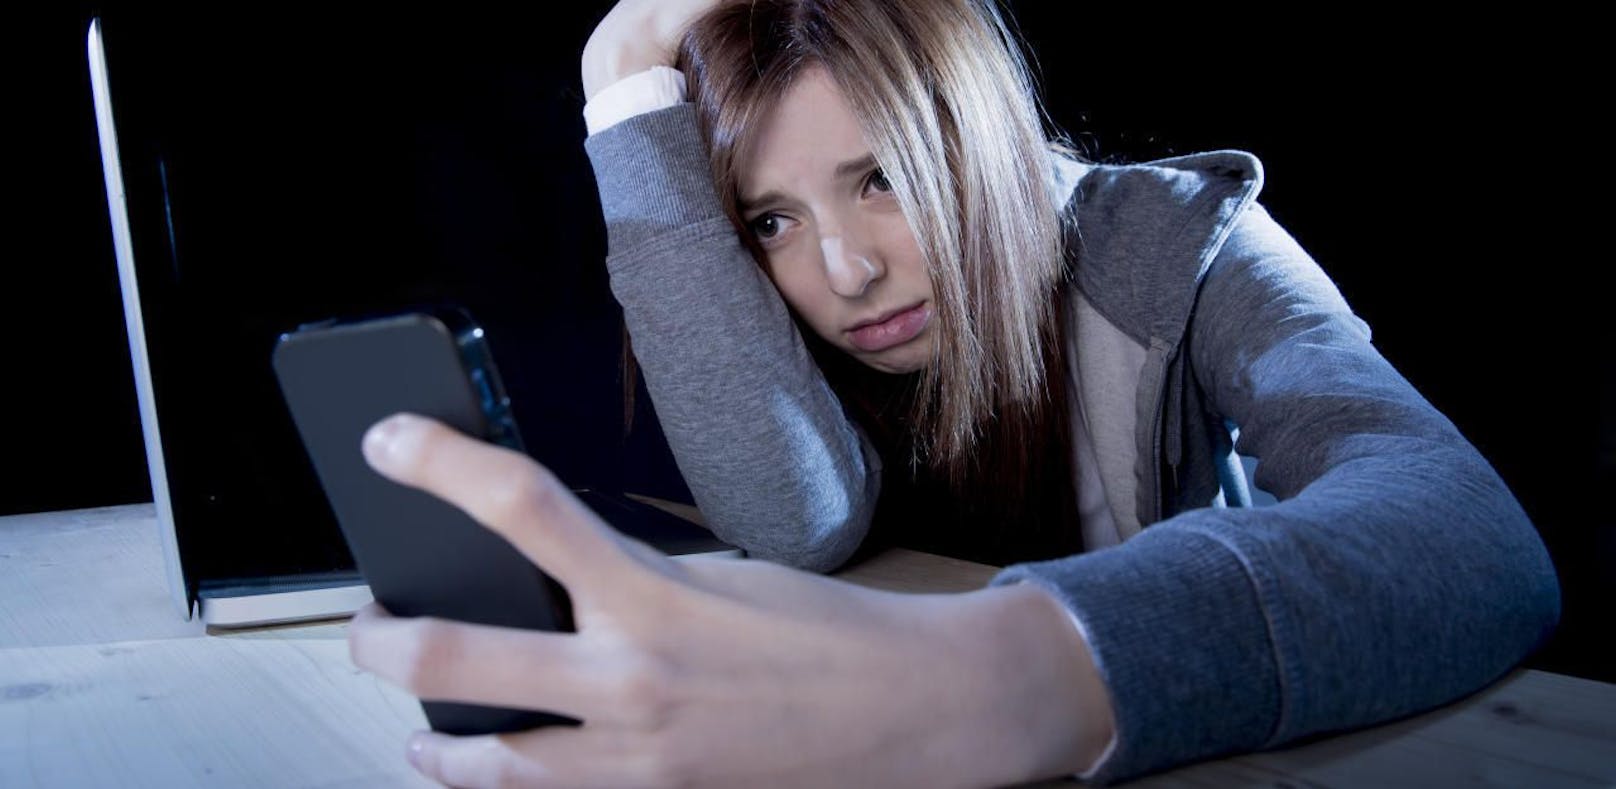 Soziale Netzwerke sind laut Studie eine Gefahr für junge Menschen.